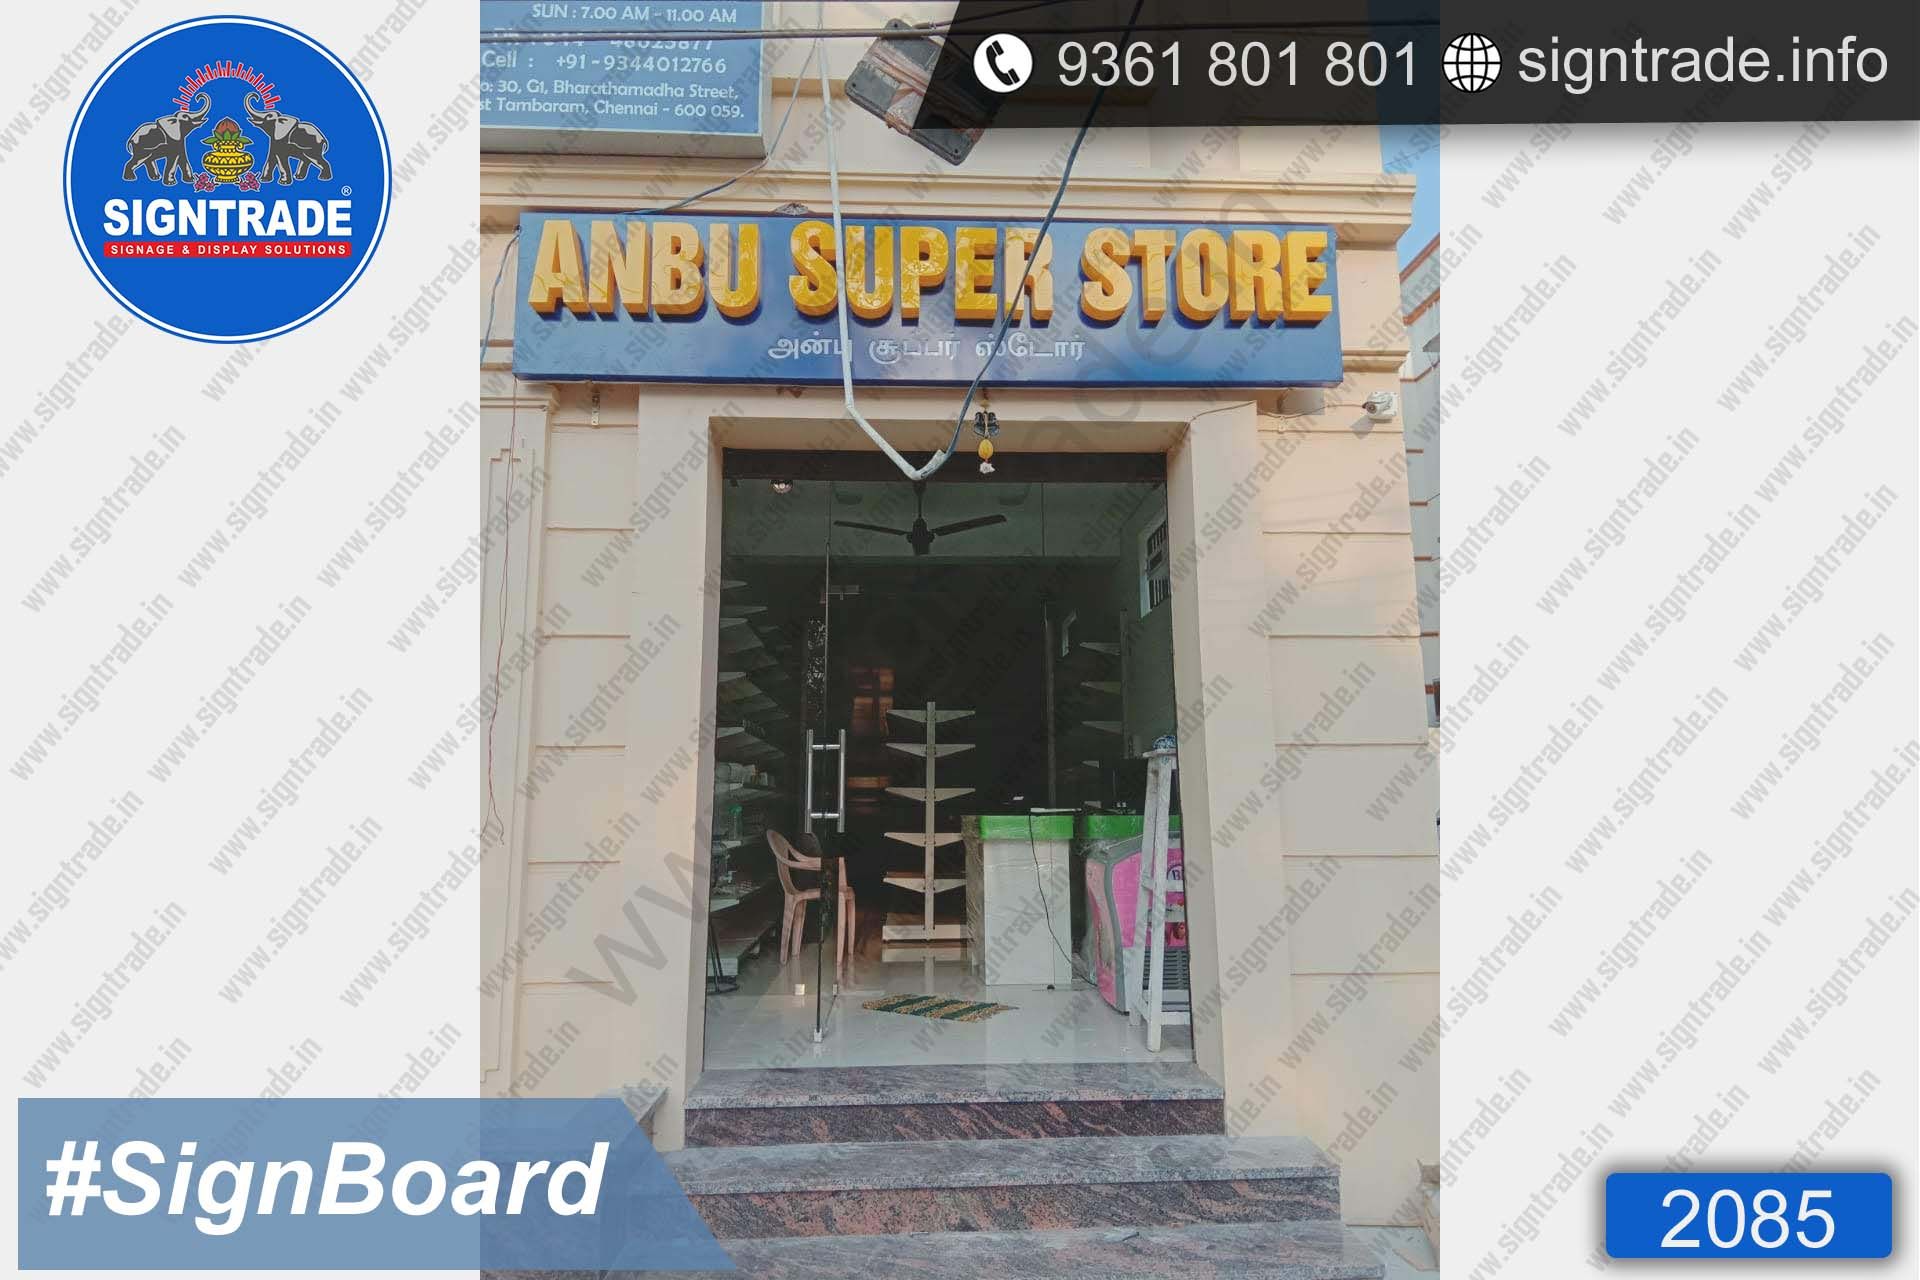 Anbu Super Store Sign Board